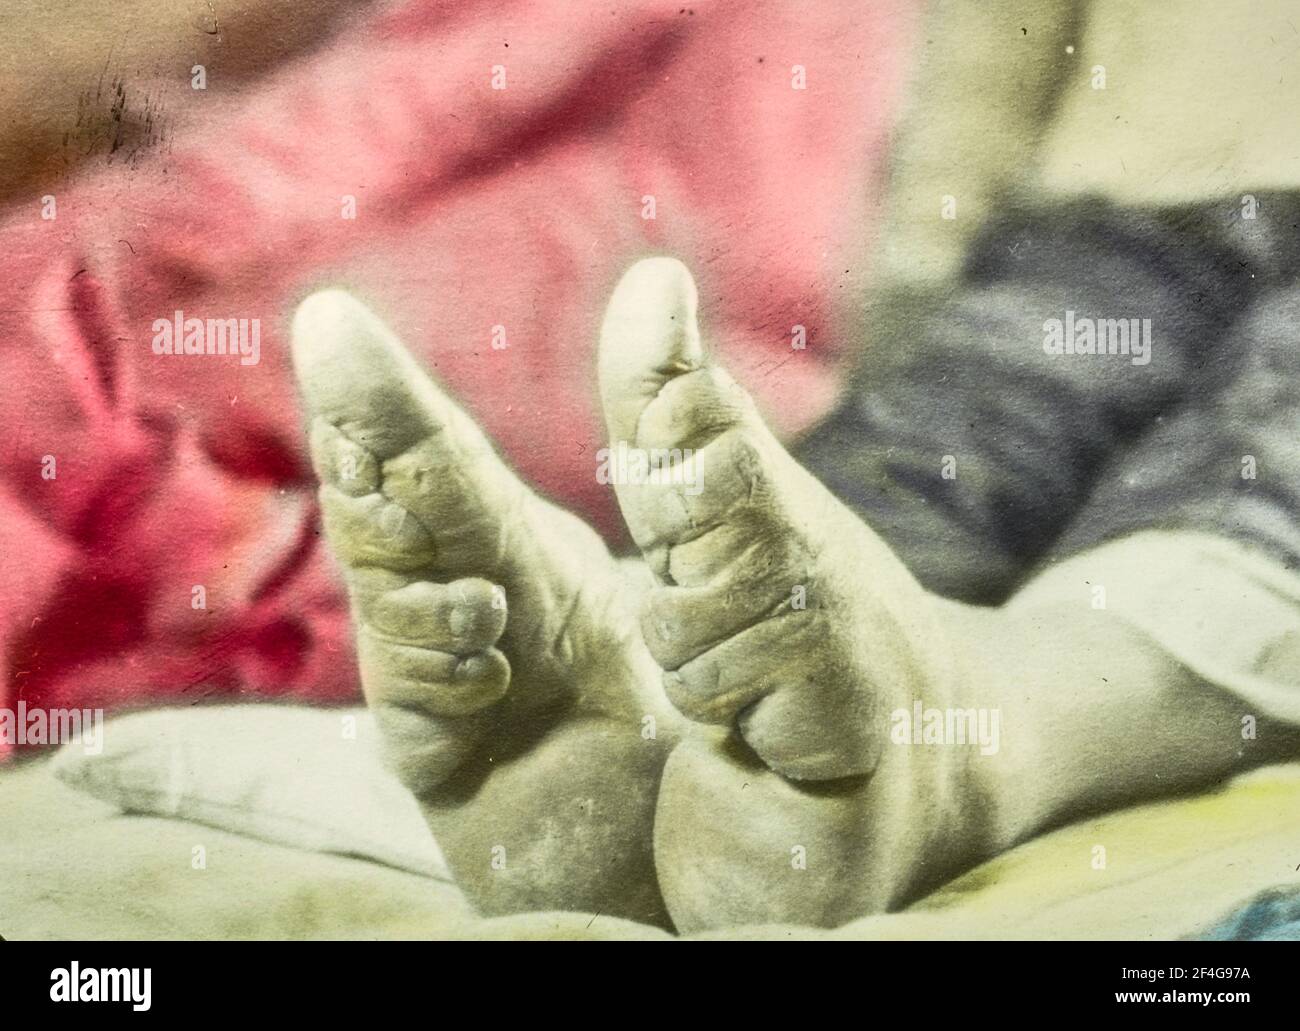 Immagini ravvicinate dei piedi di una bambina, che mostrano gli effetti di deformazione dell'attacco del piede, che ha modificato la forma e le dimensioni dei piedi di una persona ed è stato vietato nel 1911, Cina, 1918. Dalla collezione di fotografie di Sidney D. Gamble. () Foto Stock